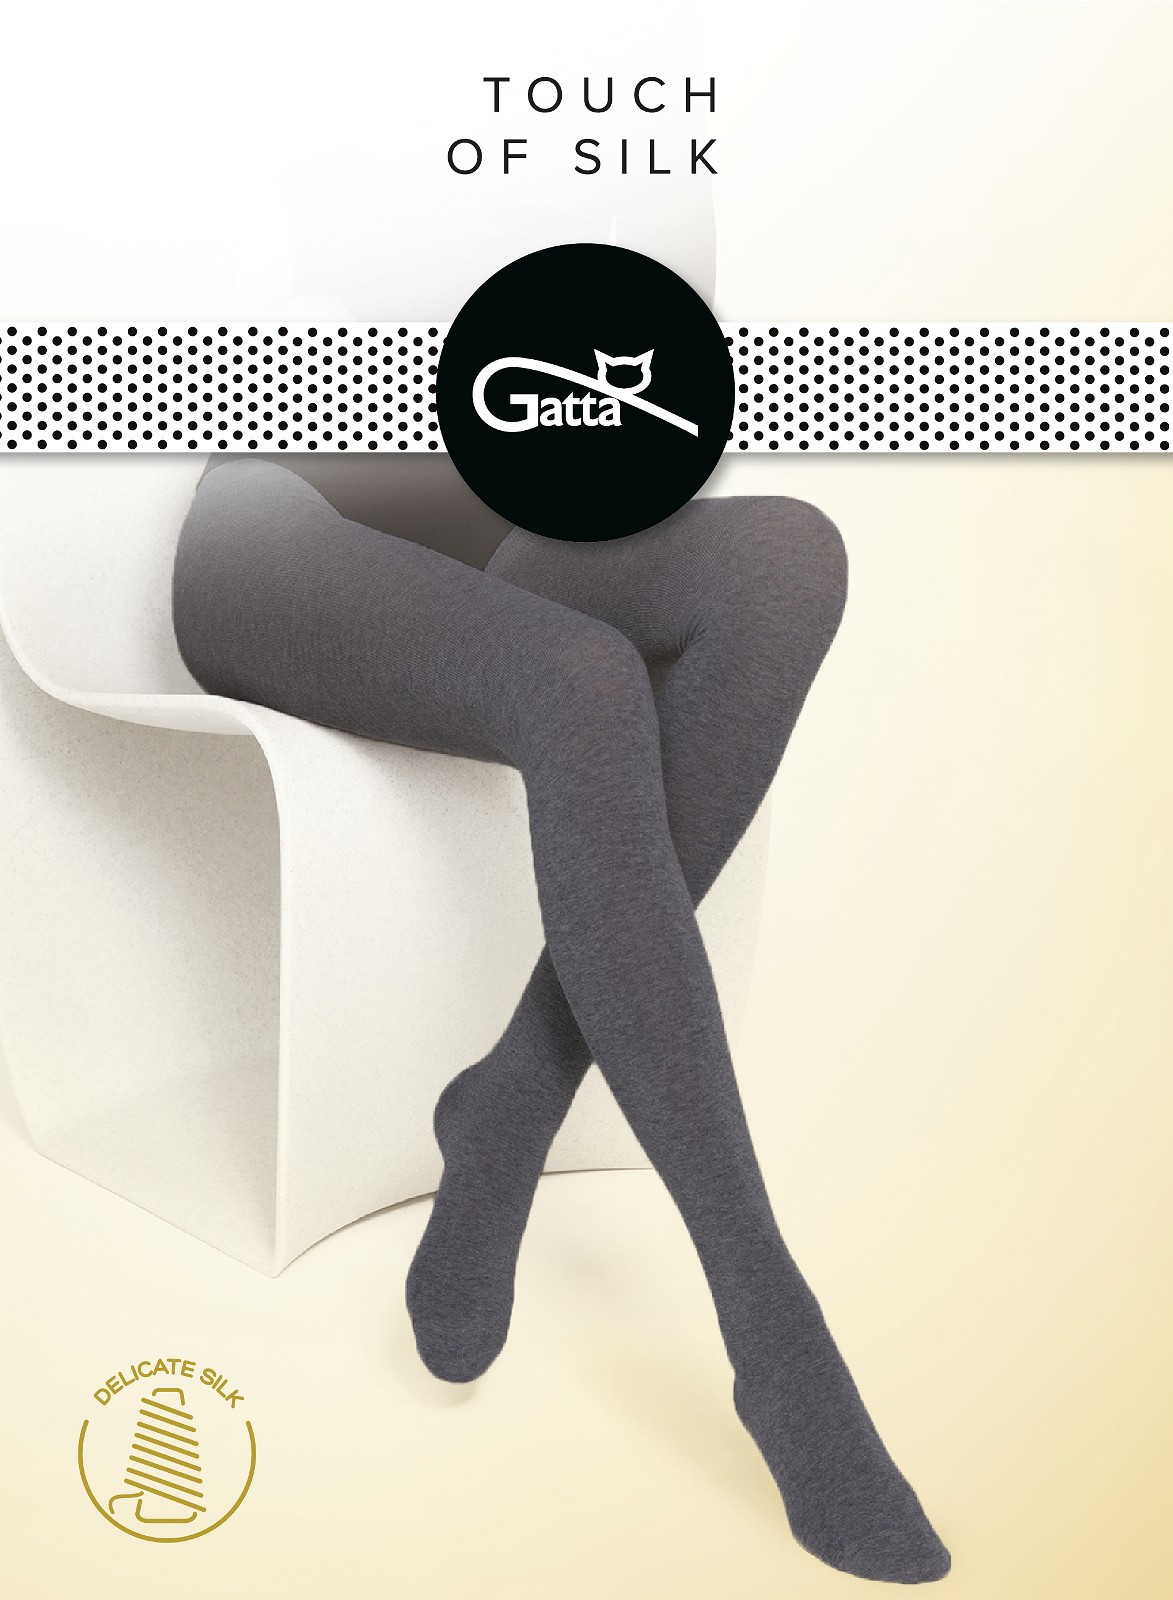 Dámské punčochové kalhoty Gatta Touch of Silk Mel.džínovina 4-L